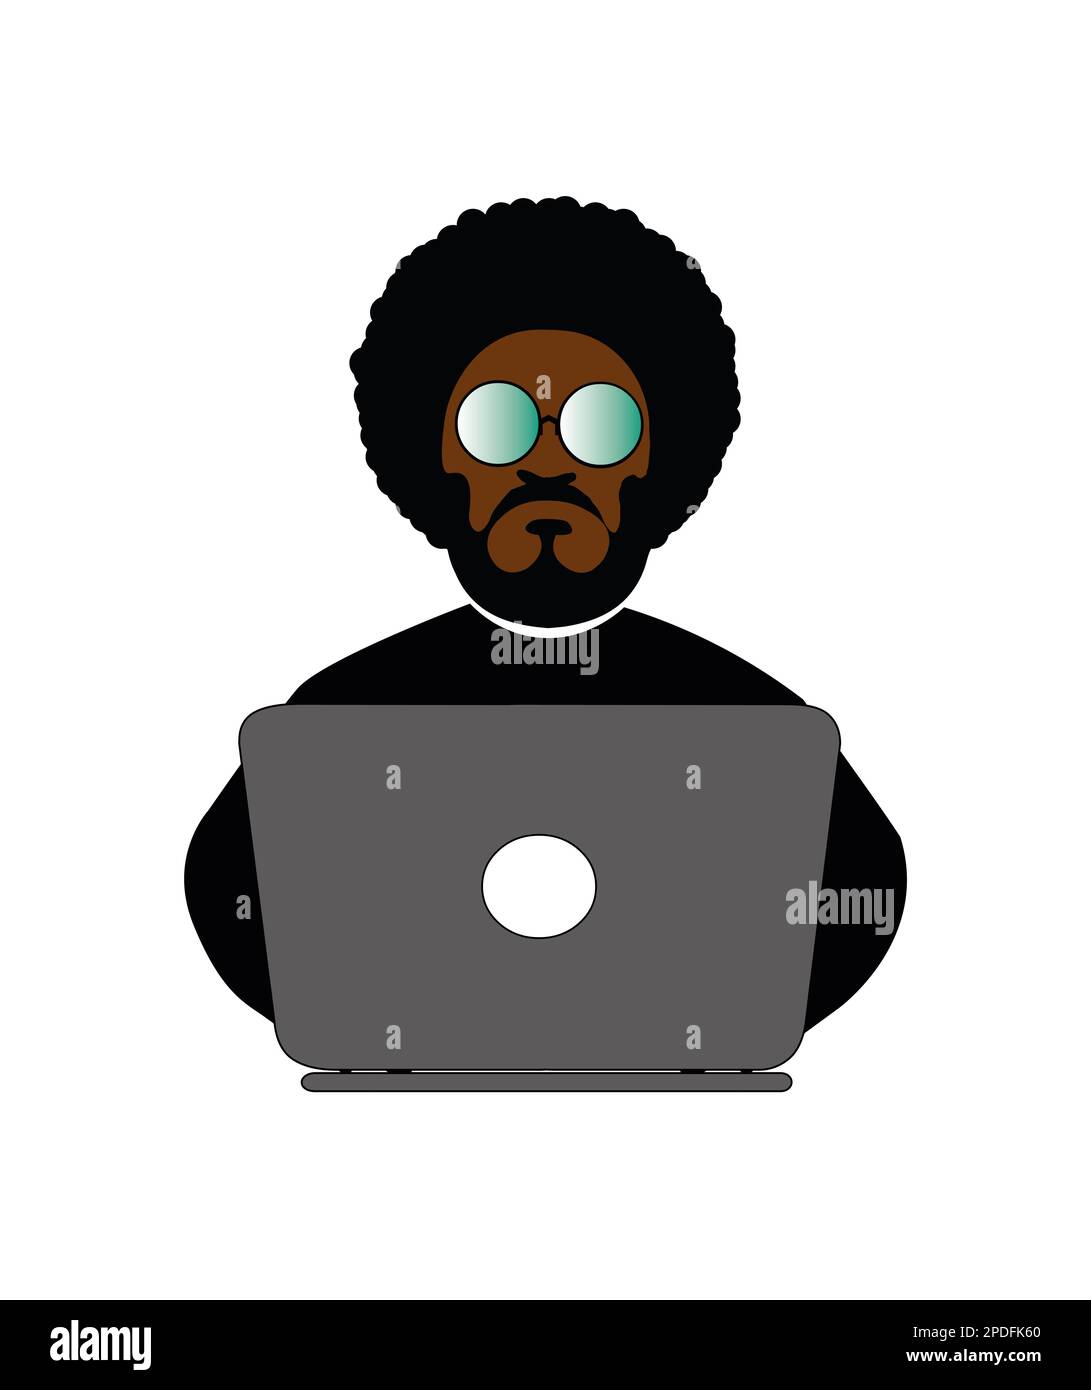 Afrikanischer Hacker, der mit einem Laptop arbeitet Stockfoto